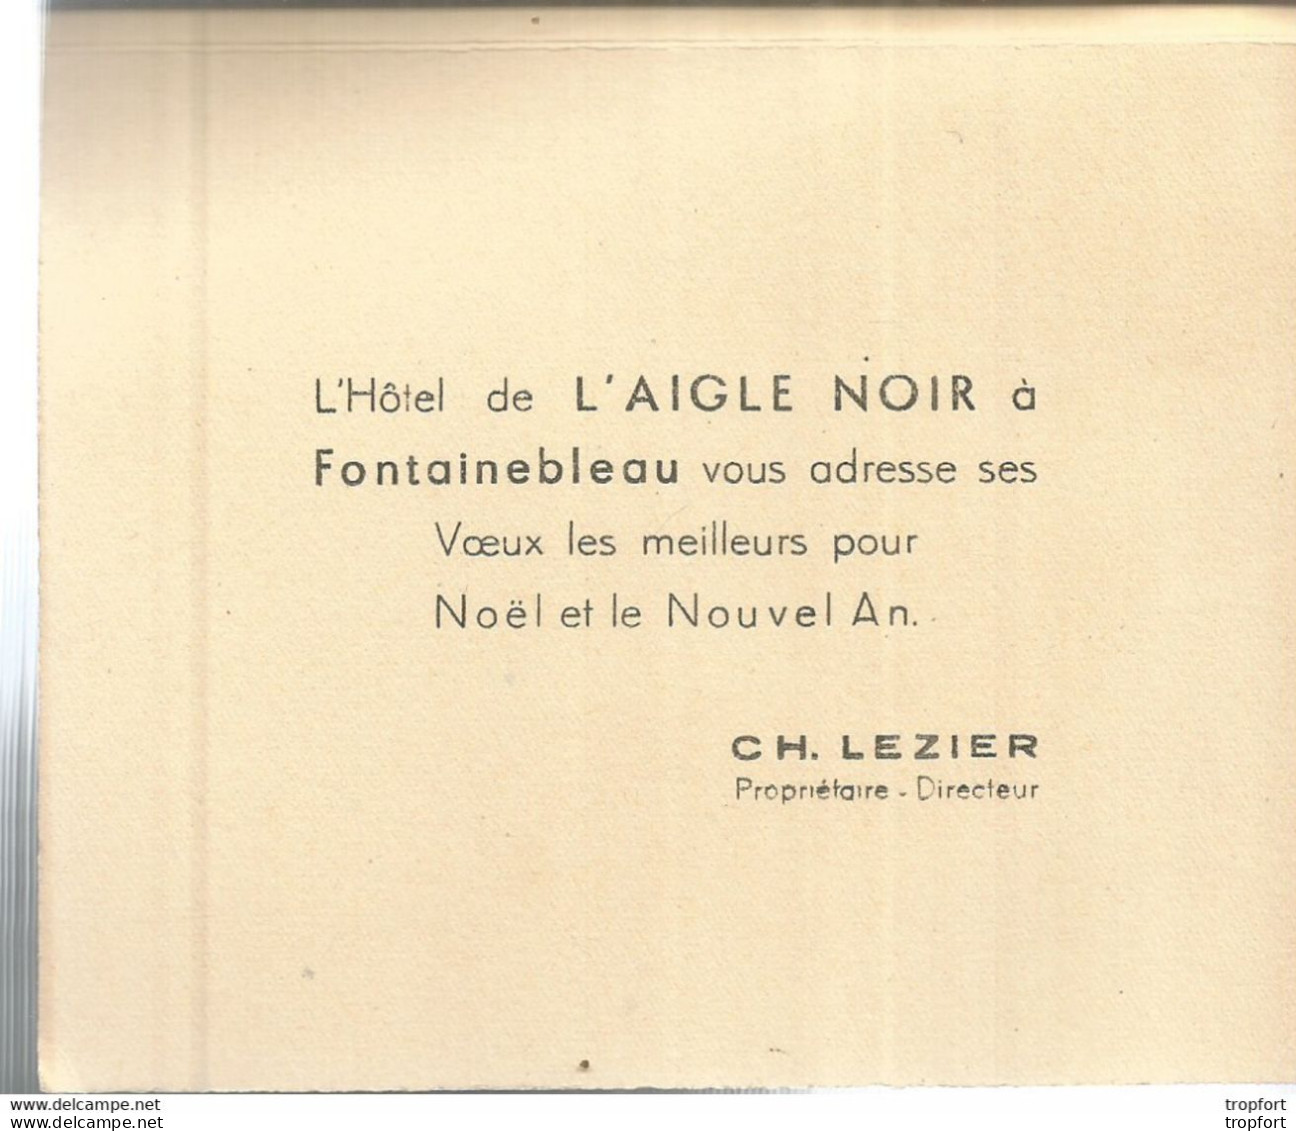 AS / Carte De Visite PUBLICITAIRE FEUILLET FONTAINEBLEAU Laigle Noir HOTEL CH.LEZIER - Cartes De Visite